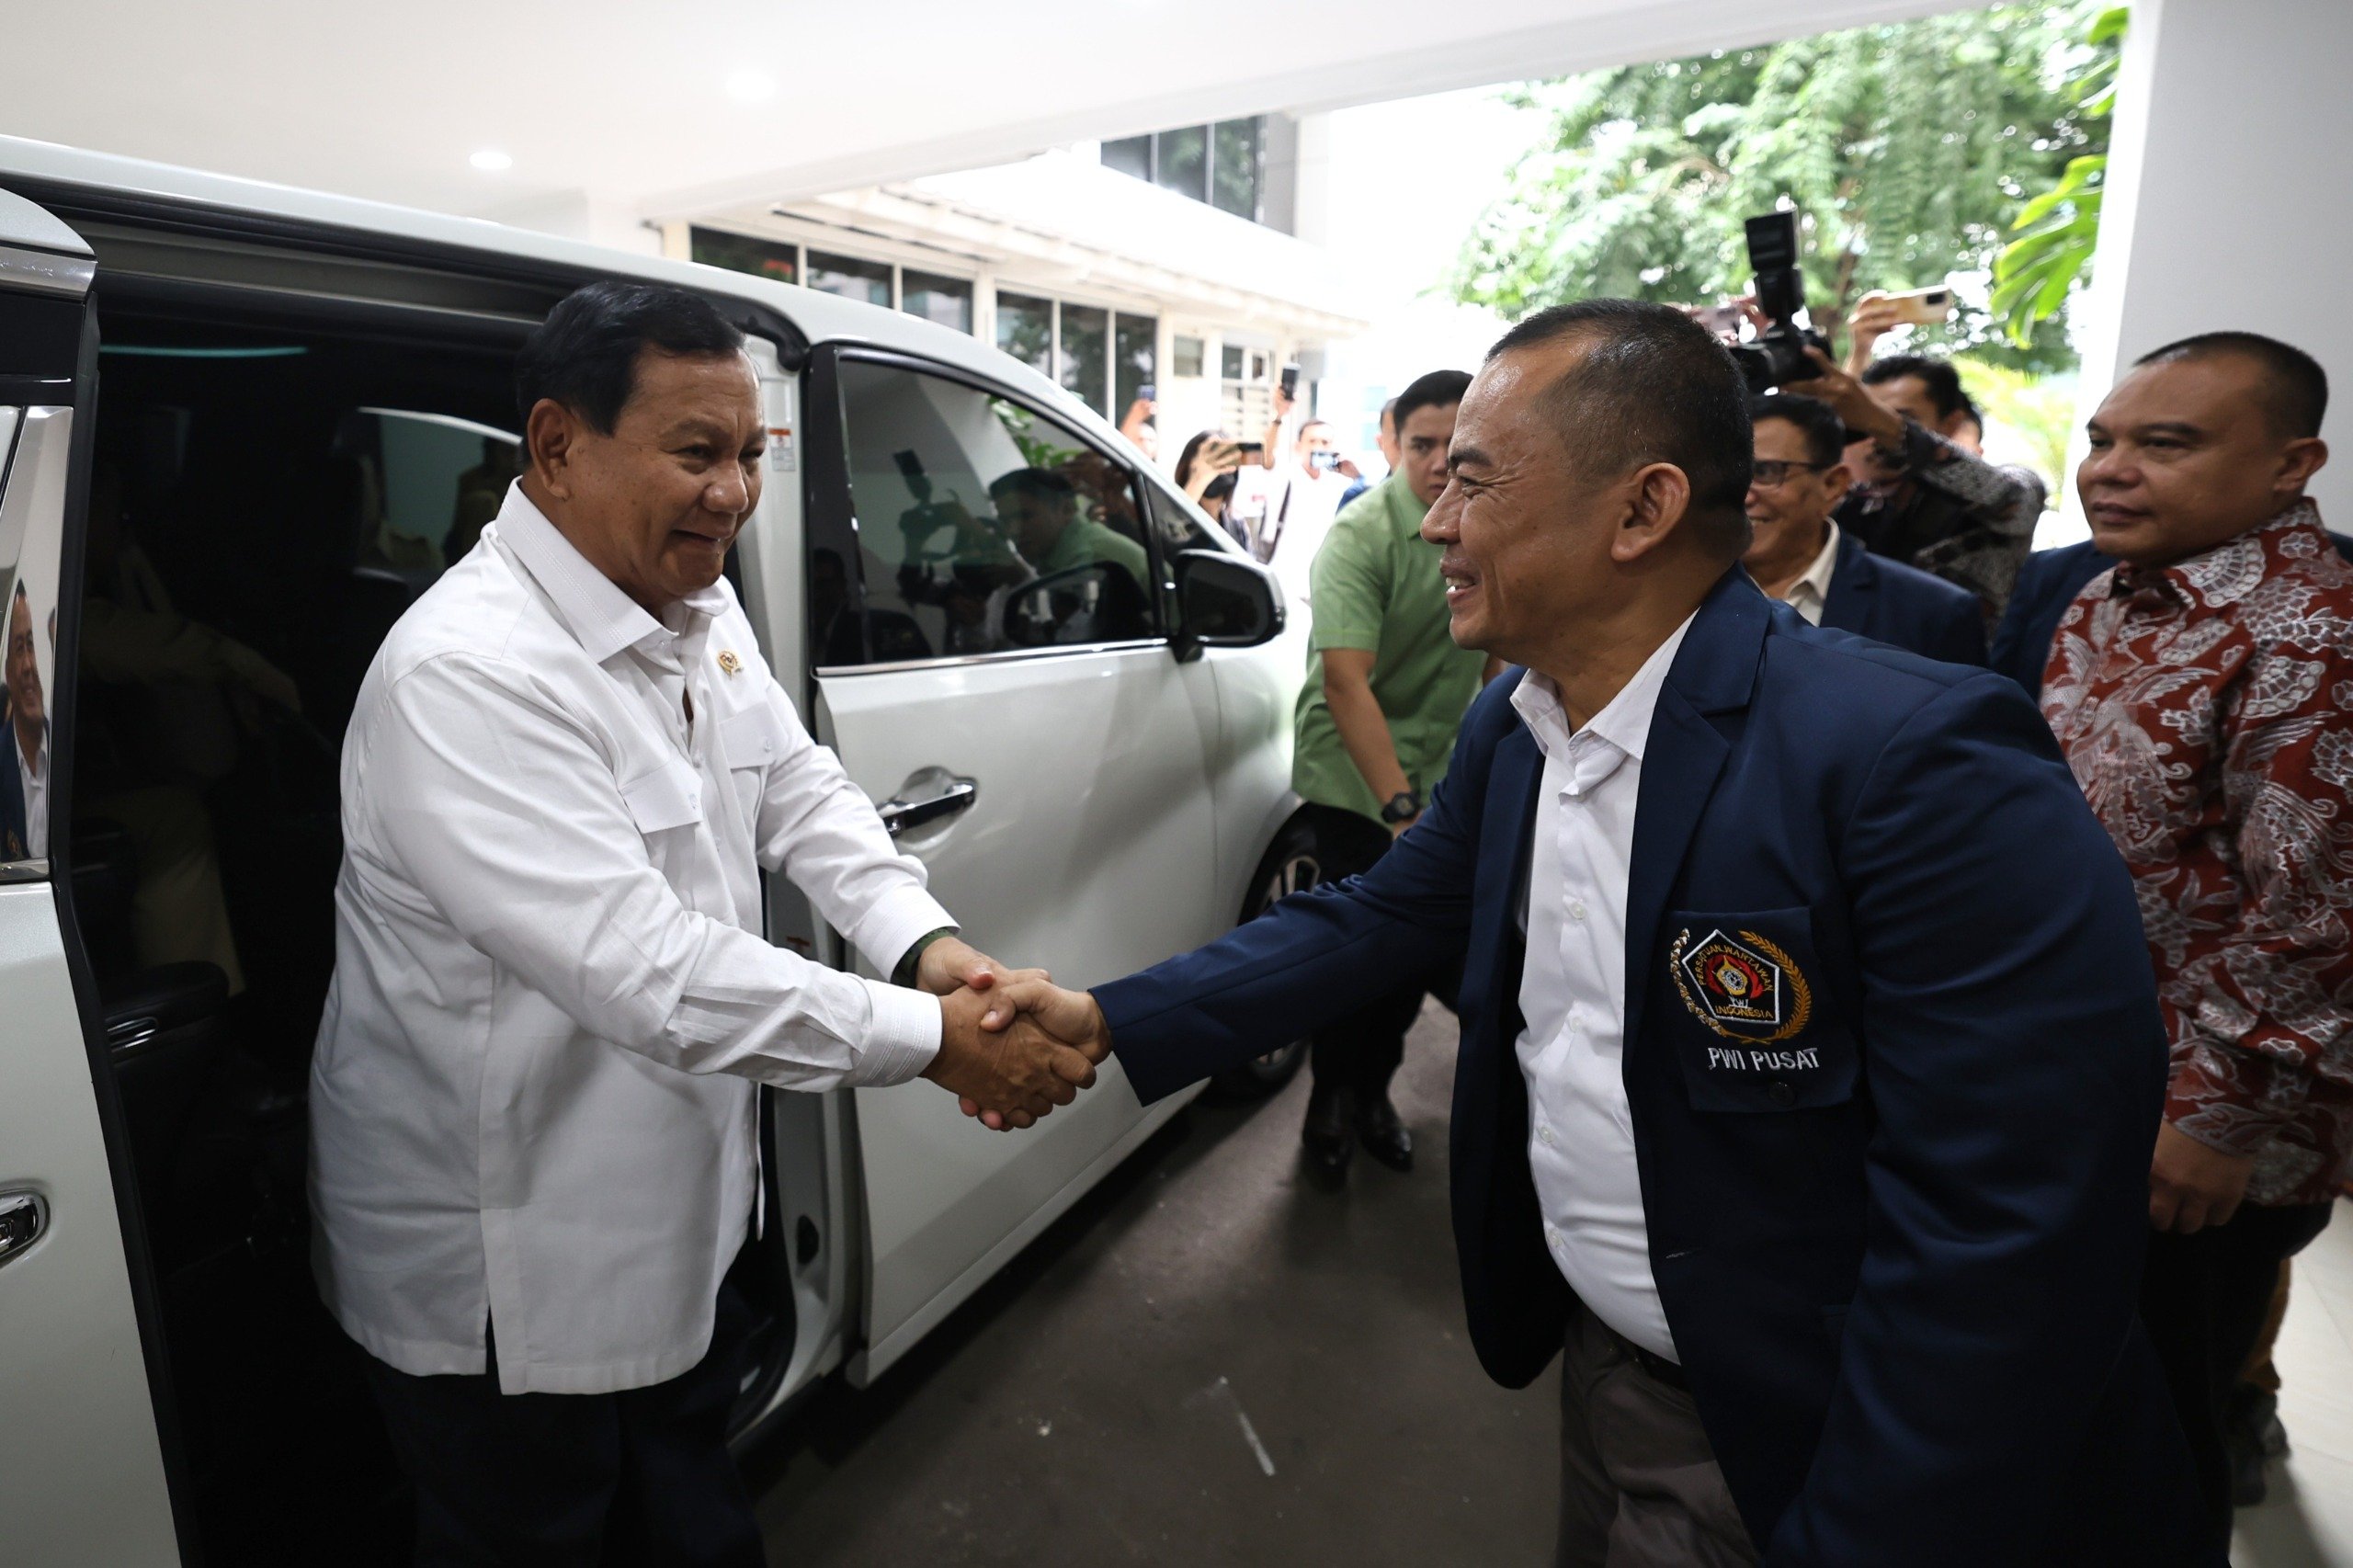 Calon presiden nomor urut 2, Prabowo Subianto, saat menghadiri Dialog Pers dan Capres yang diadakan Persatuan Wartawan Indonesiadi (PWI) di Gedung Dewan Pers. (SinPo.id/Tim Media)